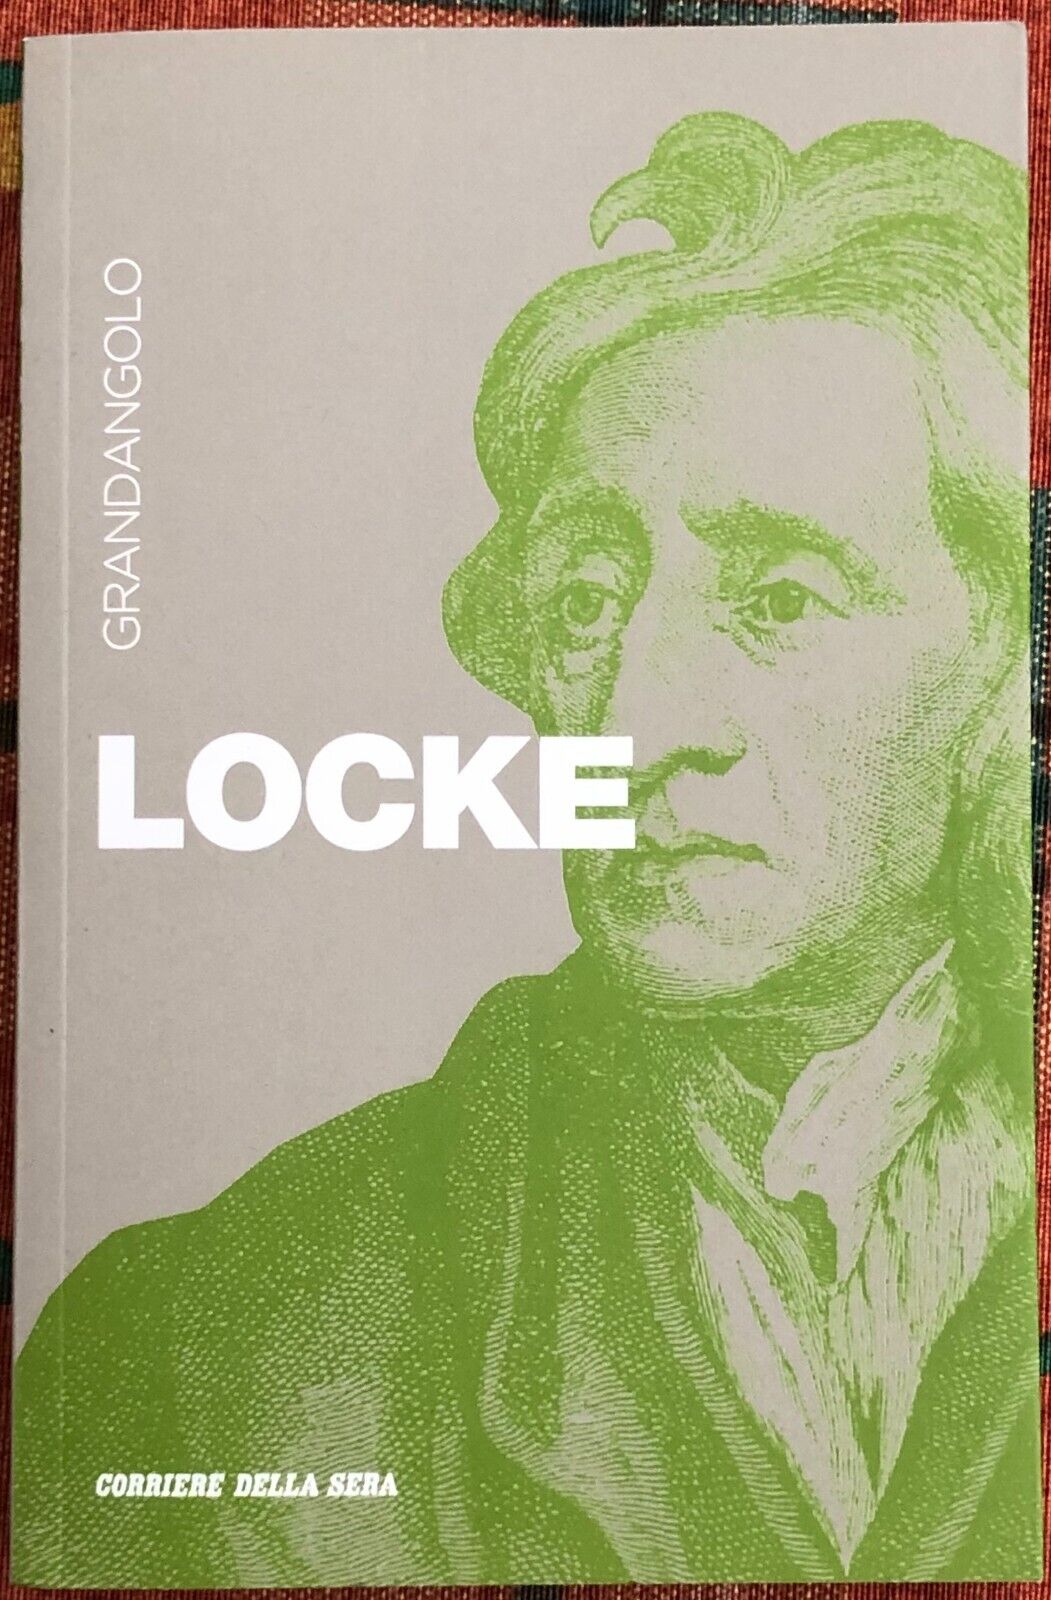 Grandangolo n. 33 - Locke di Gianni Paganini, 2019, Corriere Della Sera